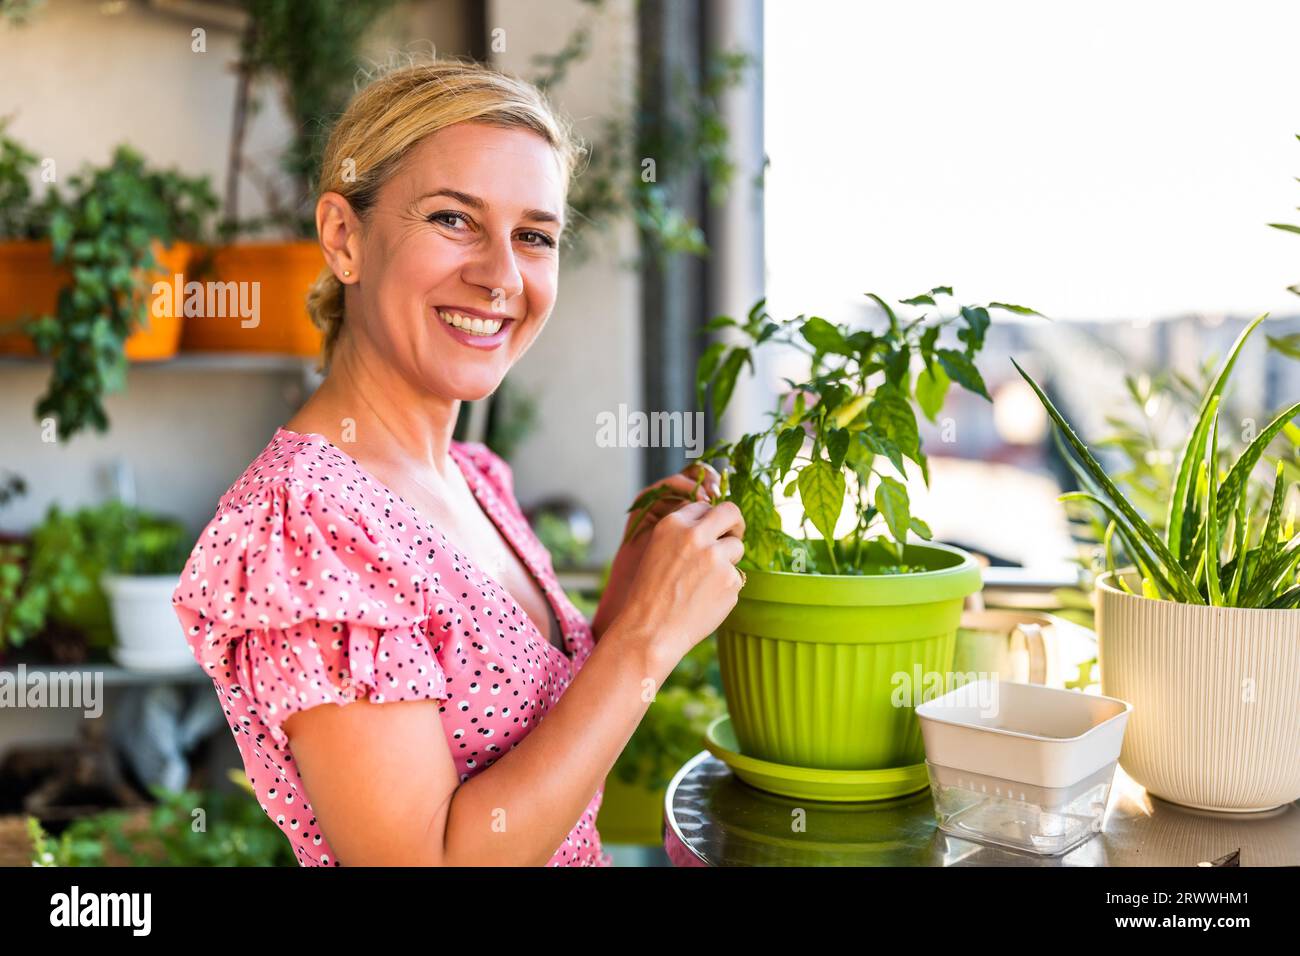 La femme heureuse cherche la croissance de ses piments Chili jaunes. Elle aime jardiner sur le balcon à la maison. Banque D'Images